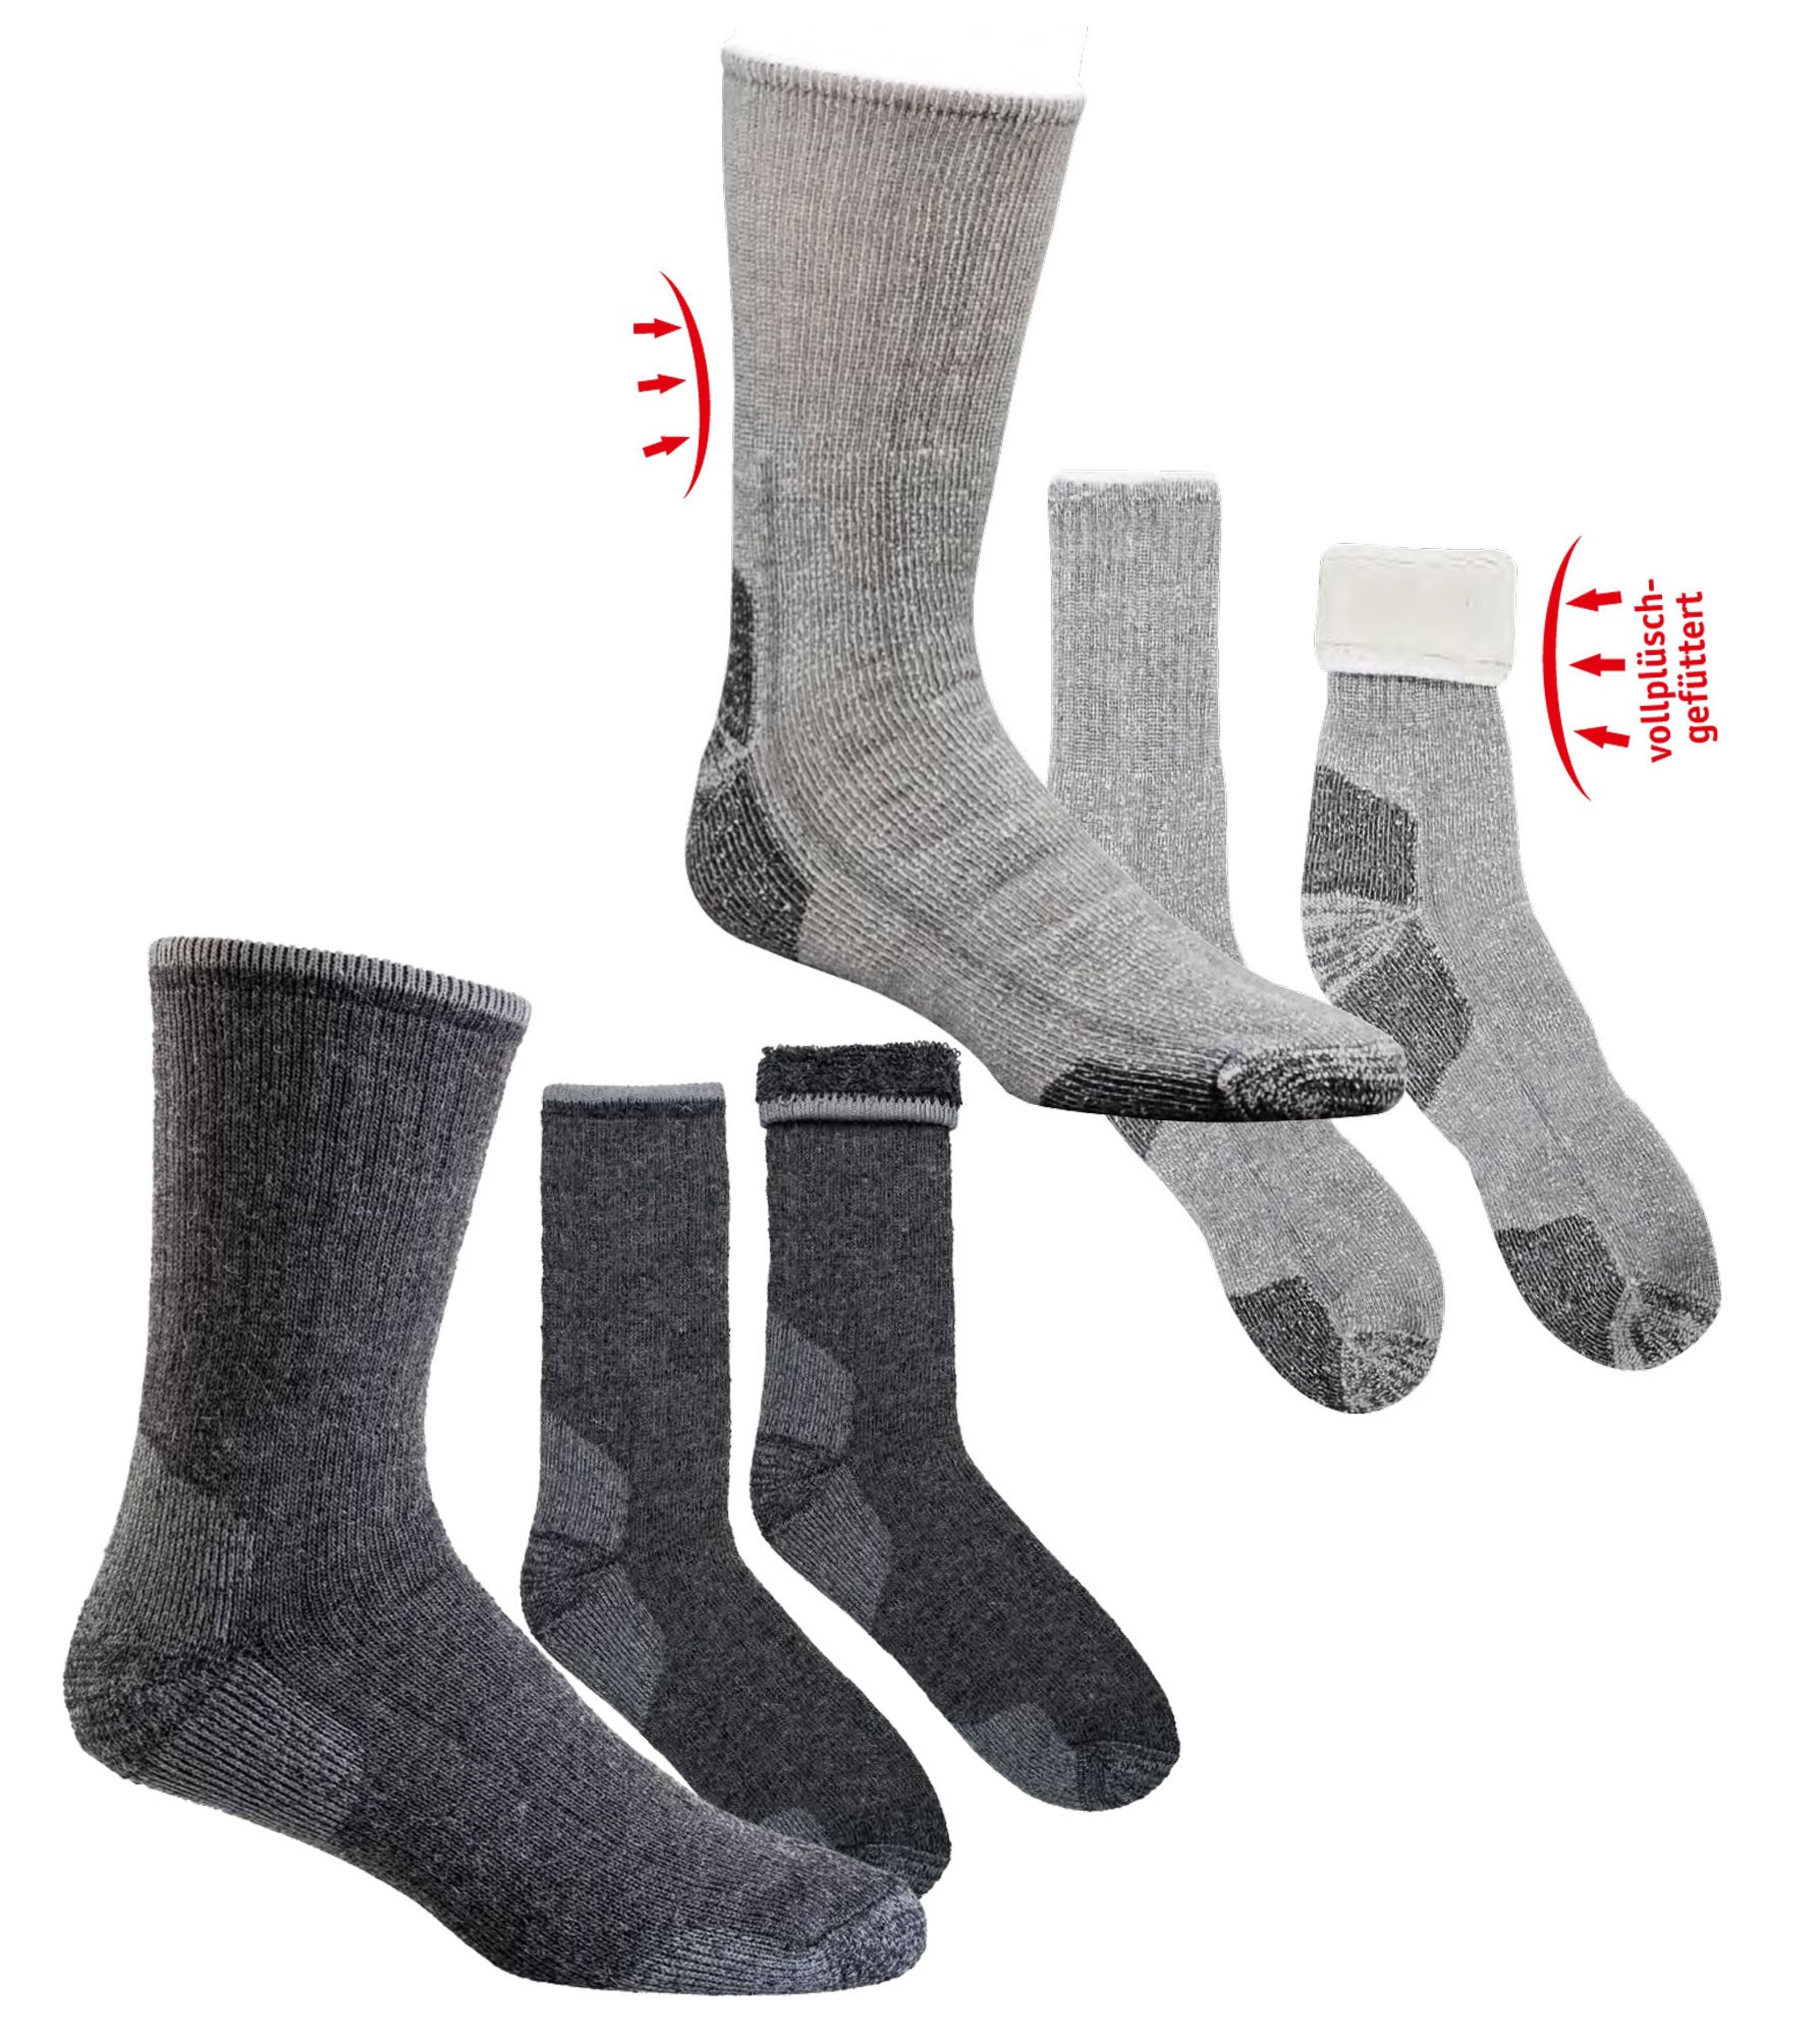 Cordura Thermal Socks